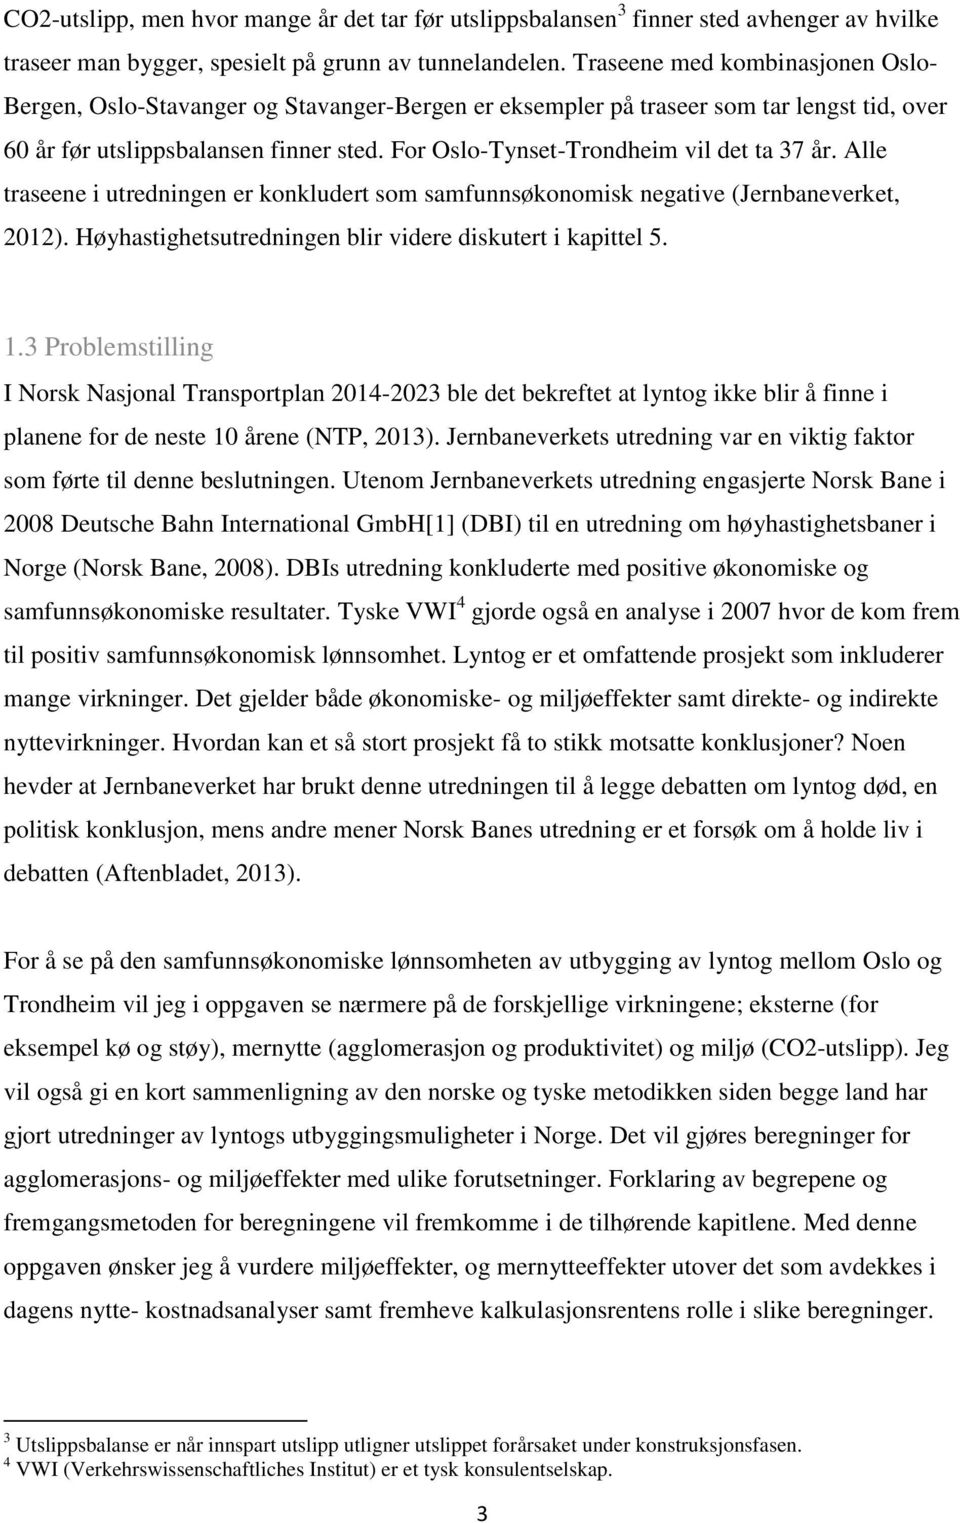 For Oslo-Tynset-Trondheim vil det ta 37 år. Alle traseene i utredningen er konkludert som samfunnsøkonomisk negative (Jernbaneverket, 2012).